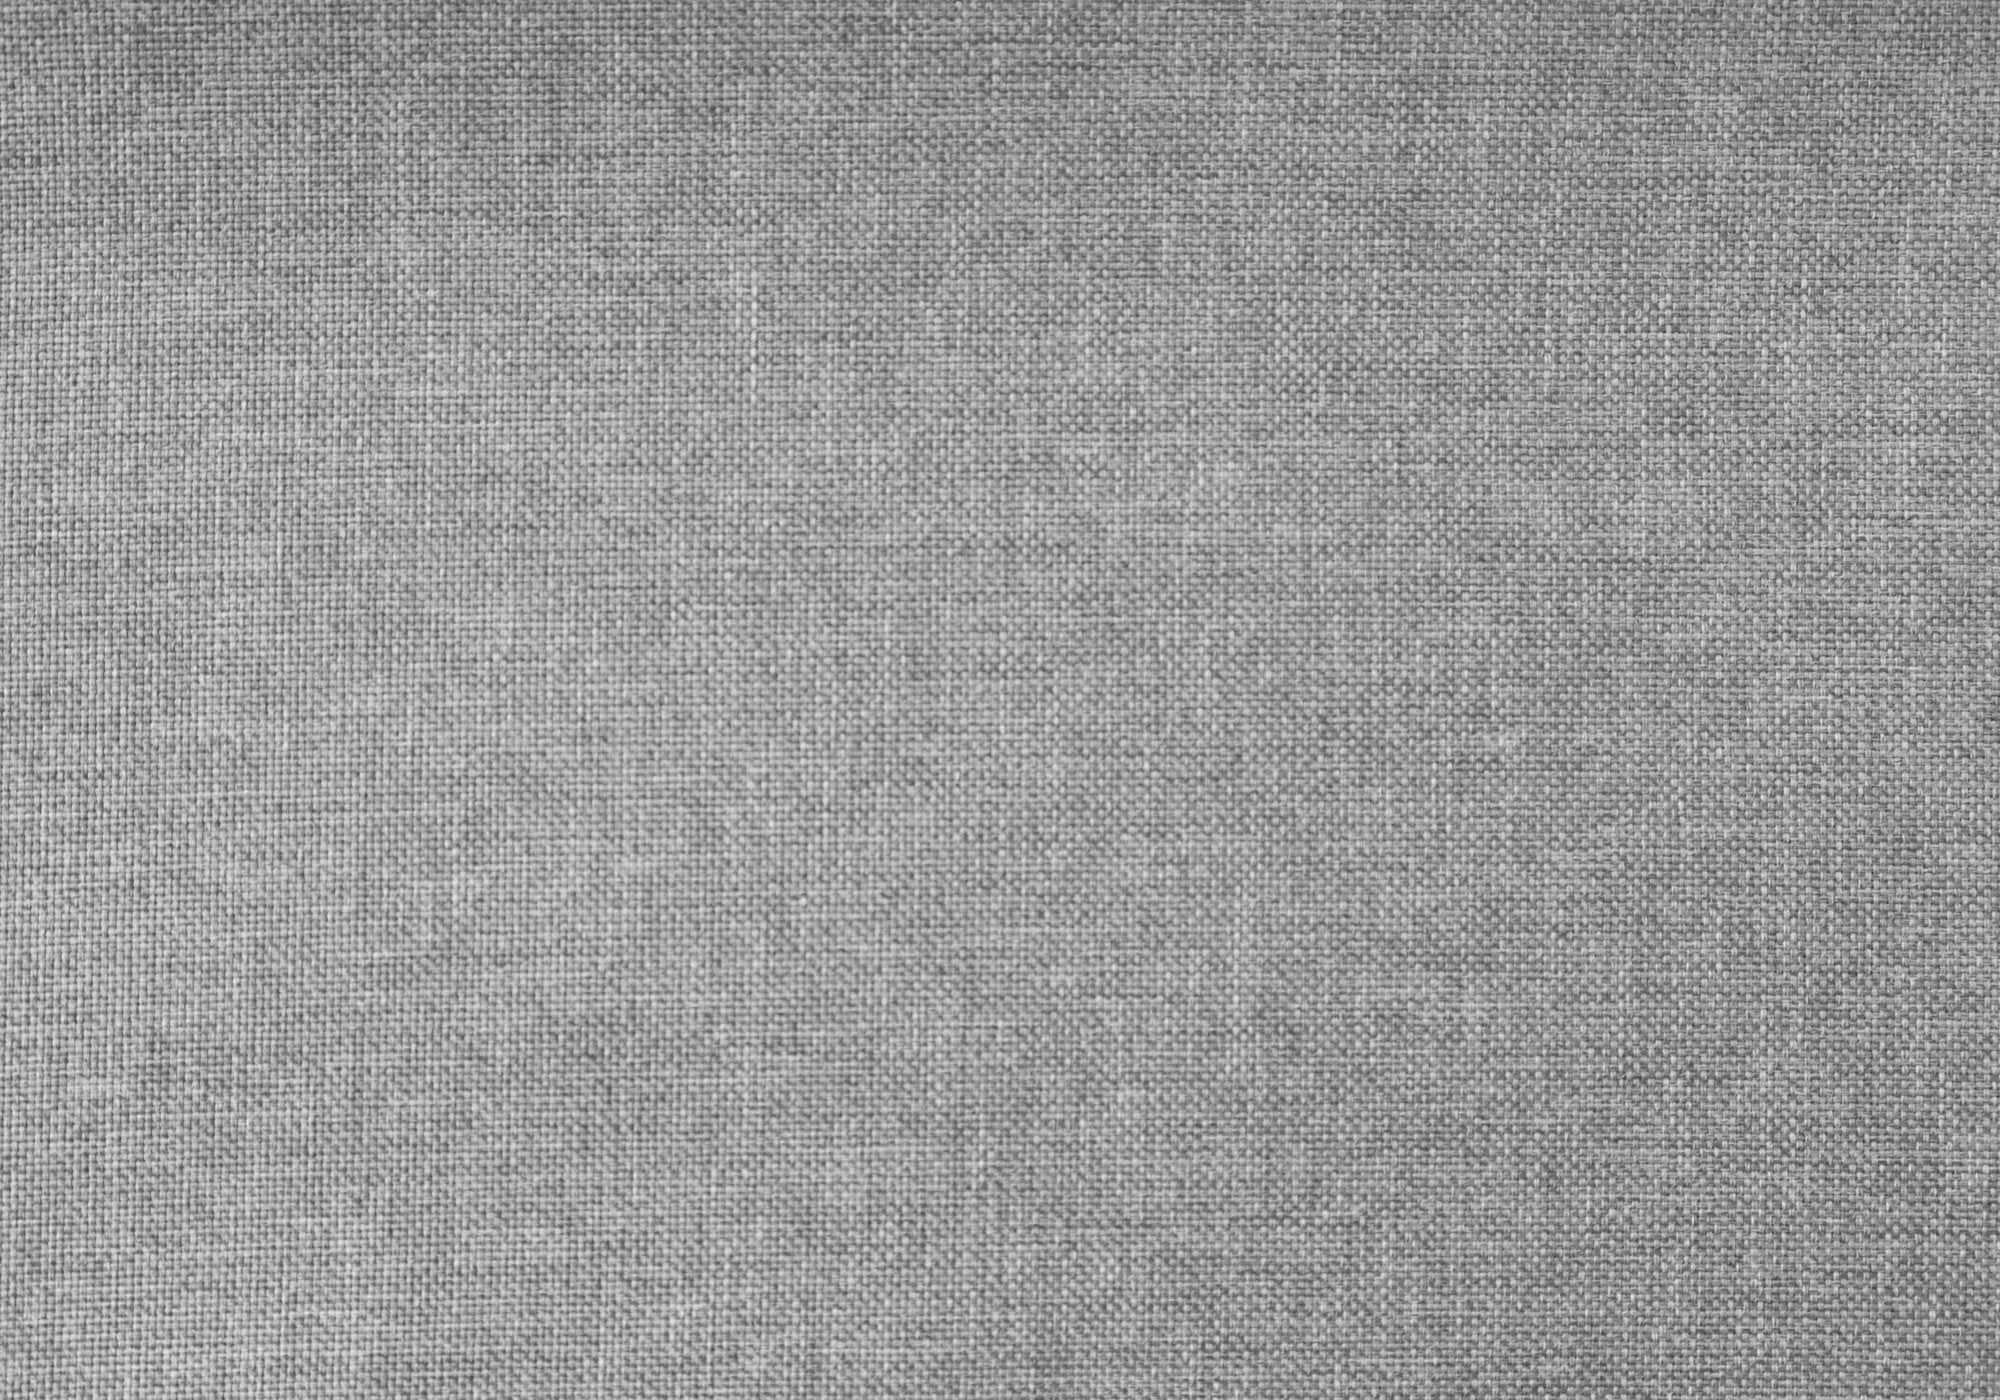 64.5" x 85.75" x 51.5" Grey Foam Solid Wood Linen  Queen Size Bed Default Title